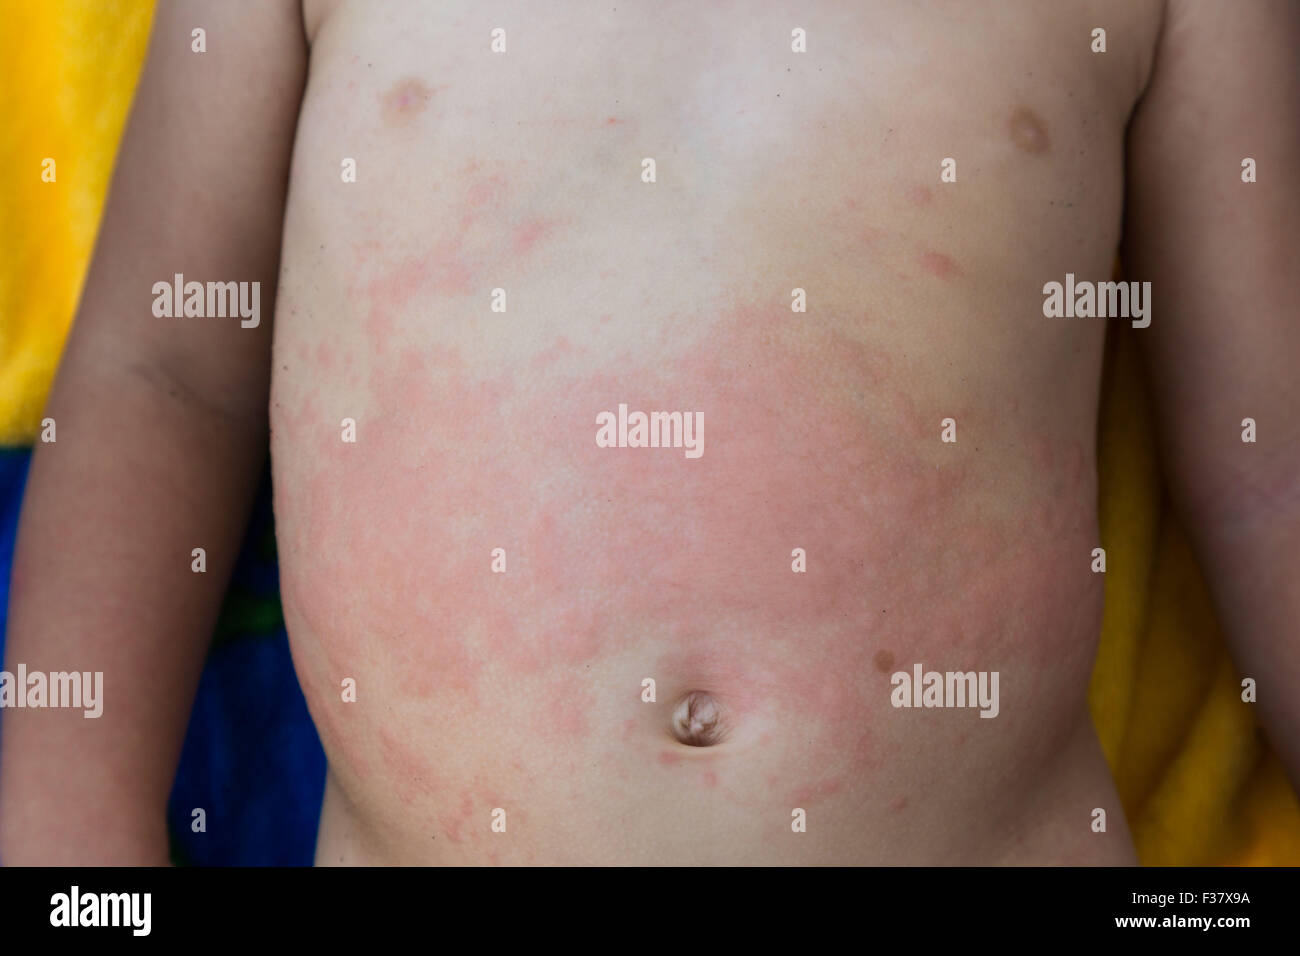 Allergy allergies rash rashes Banque de photographies et d'images ...